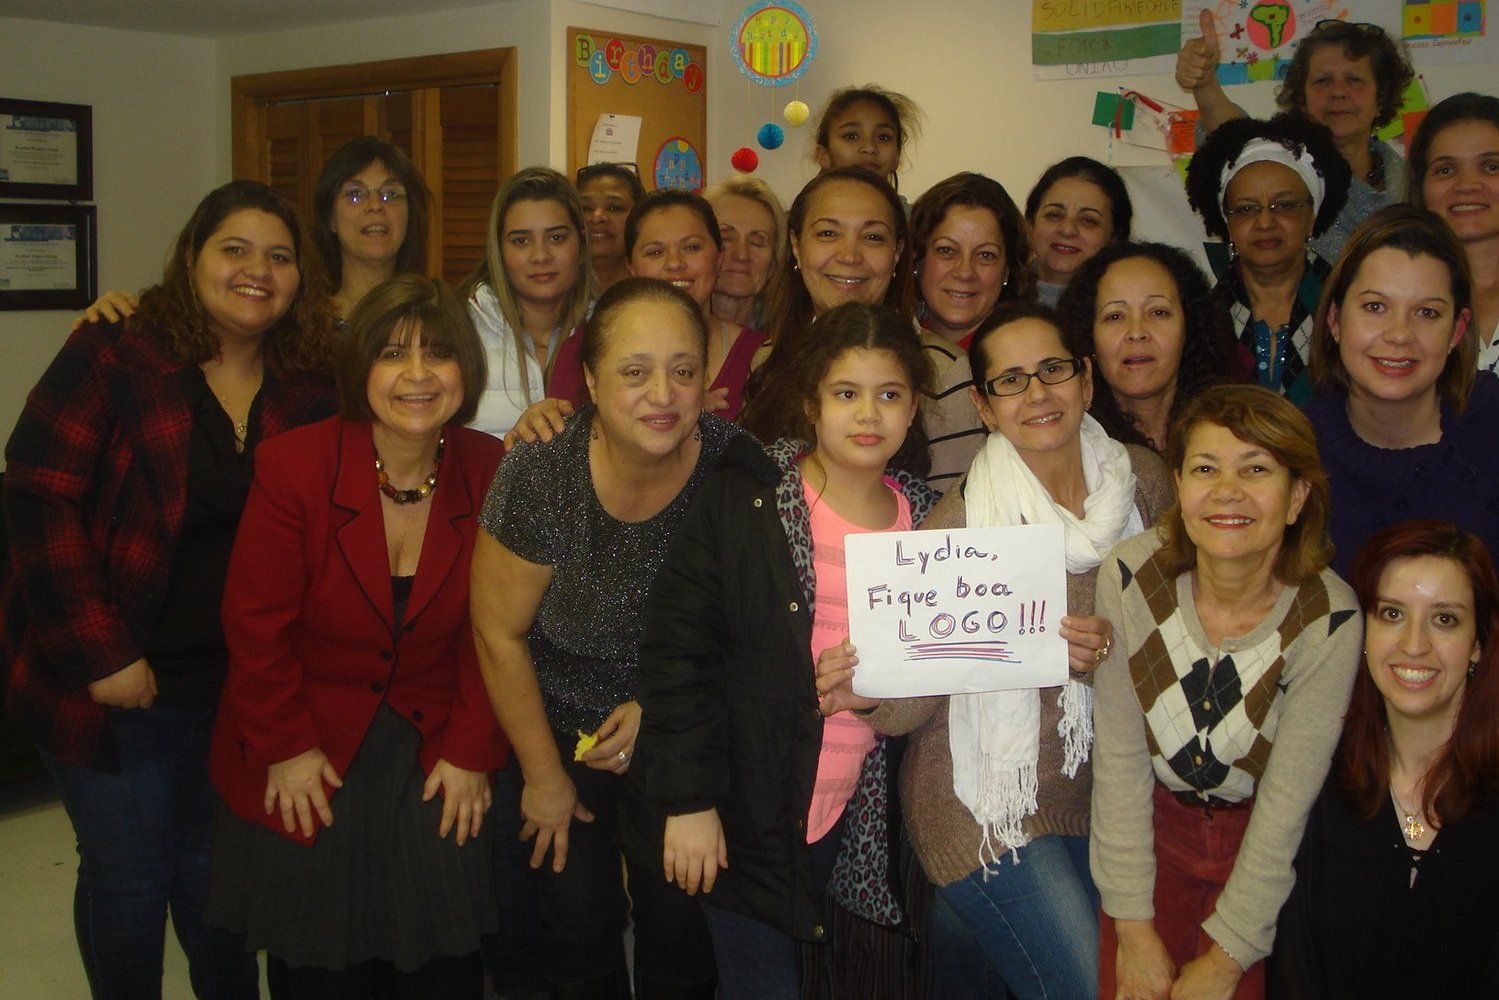  Más de veinte mujeres y niñas sonriendo a la cámara. Una al frente sostiene un letrero que dice "Lydia, Fique boa LOGO!!!" 